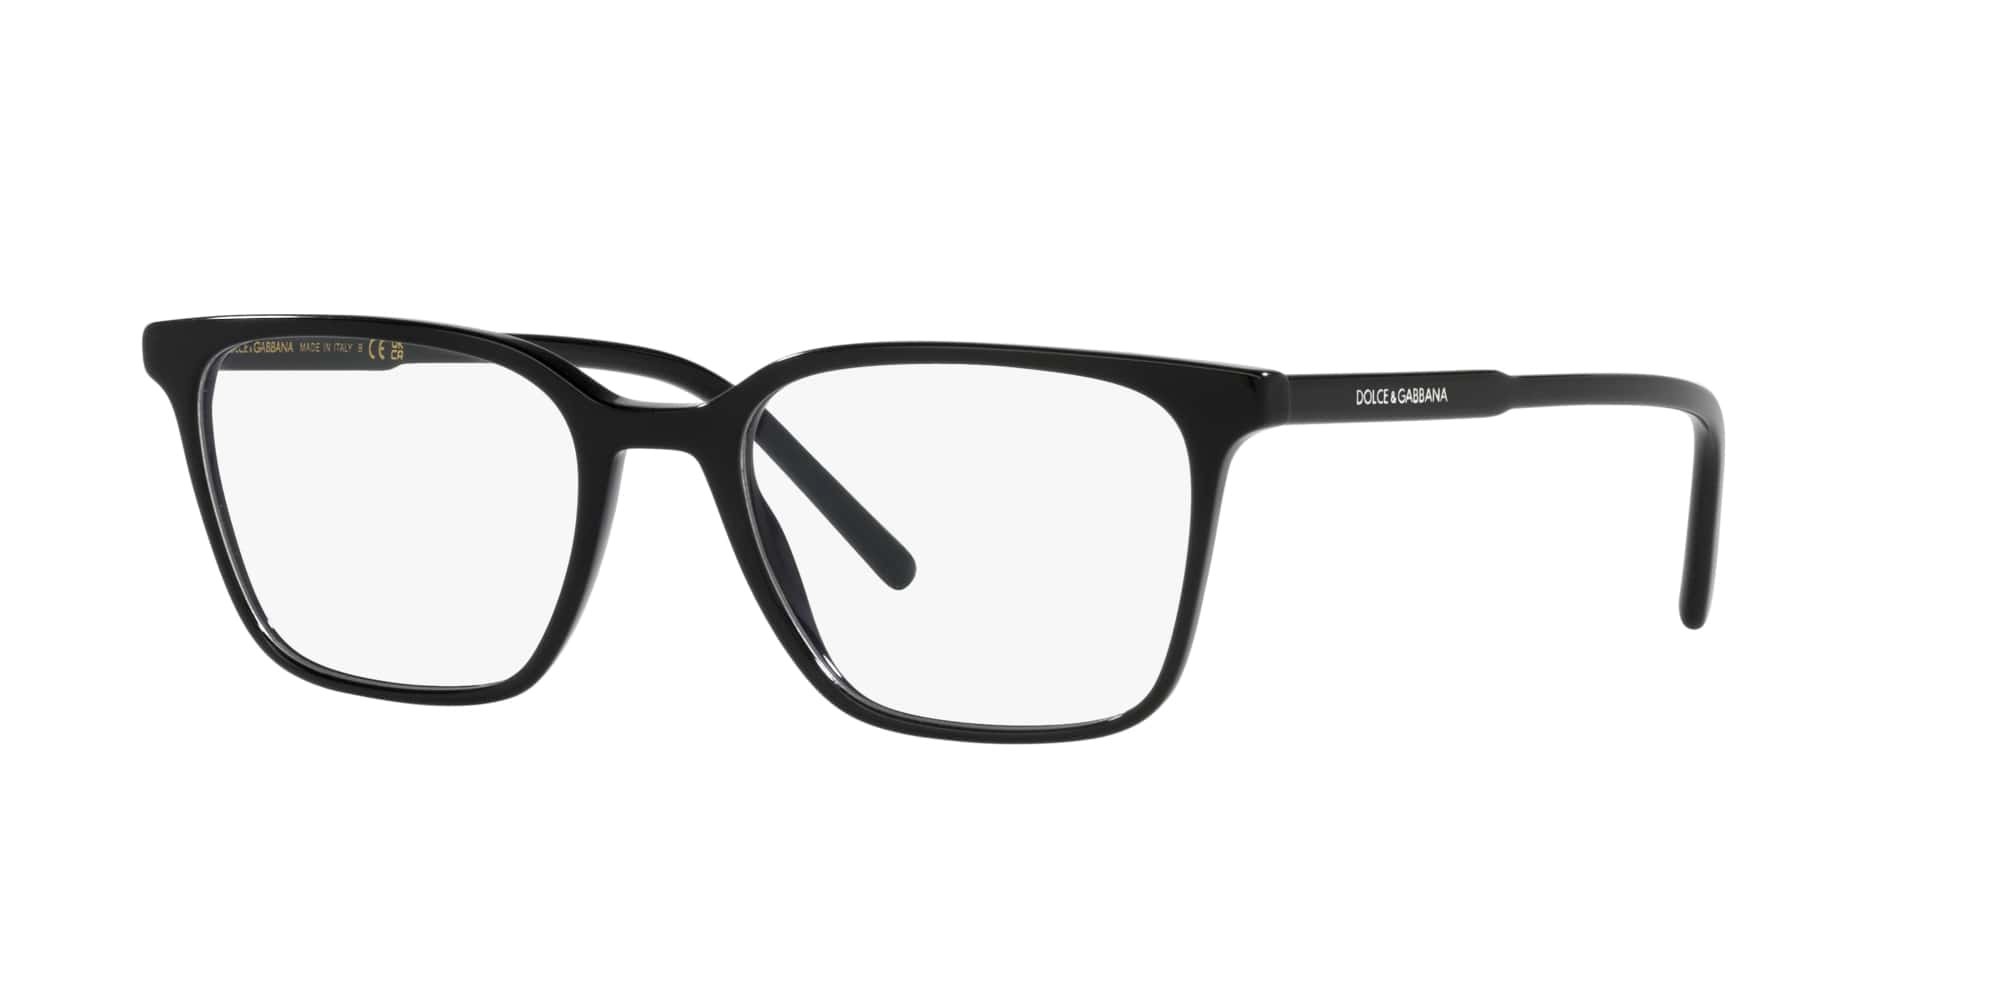 Das Bild zeigt die Korrektionsbrille DG3365 501 von der Marke D&G in schwarz.